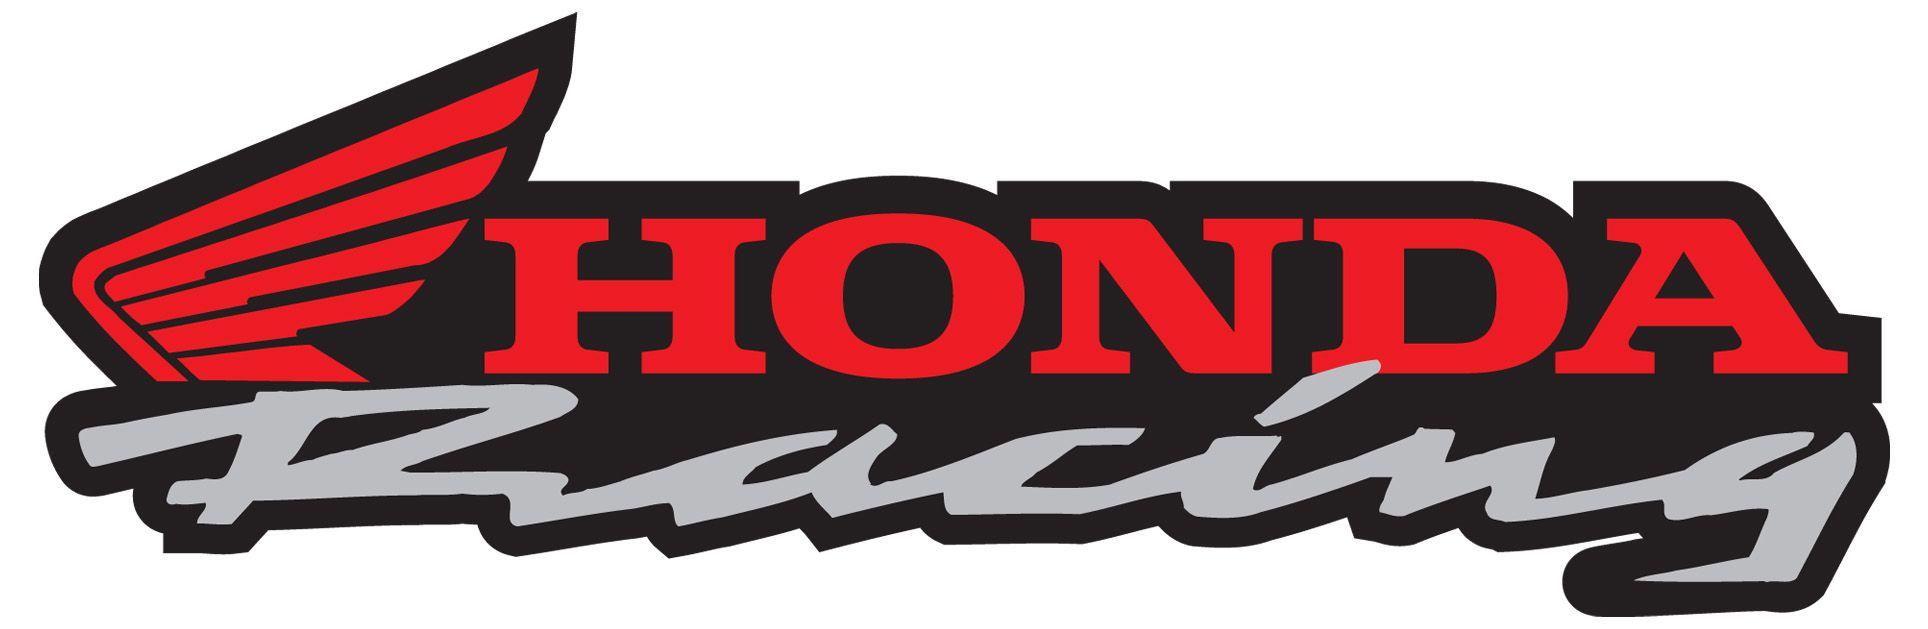 Honda Motocross Logo - Honda racing Logos